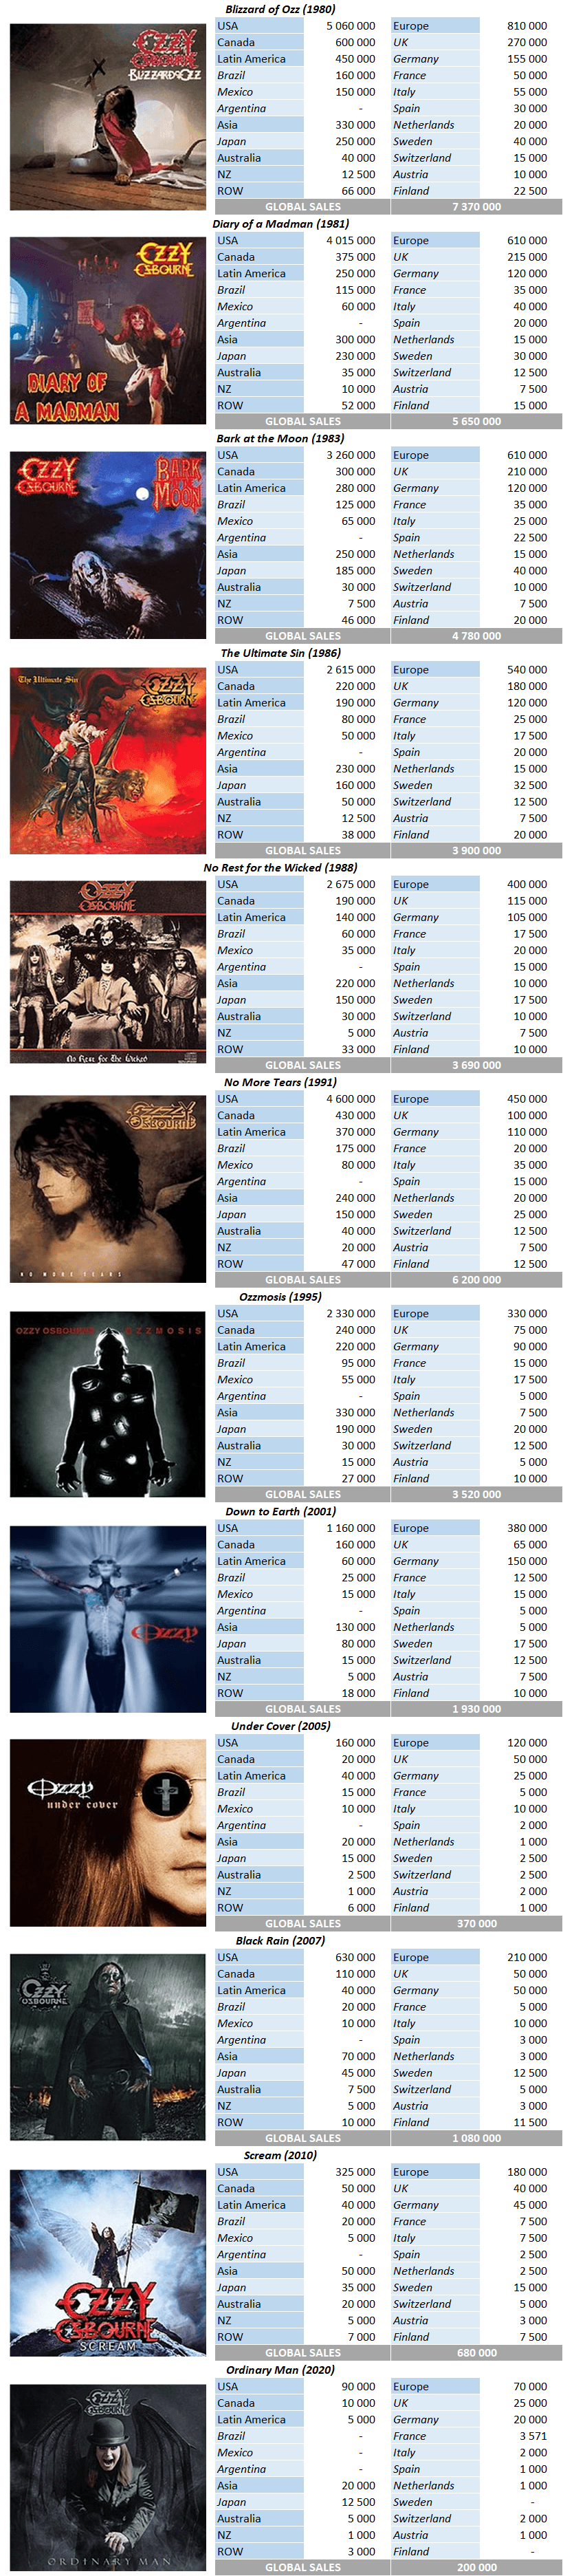 CSPC Ozzy Osbourne albums sales breakdowns